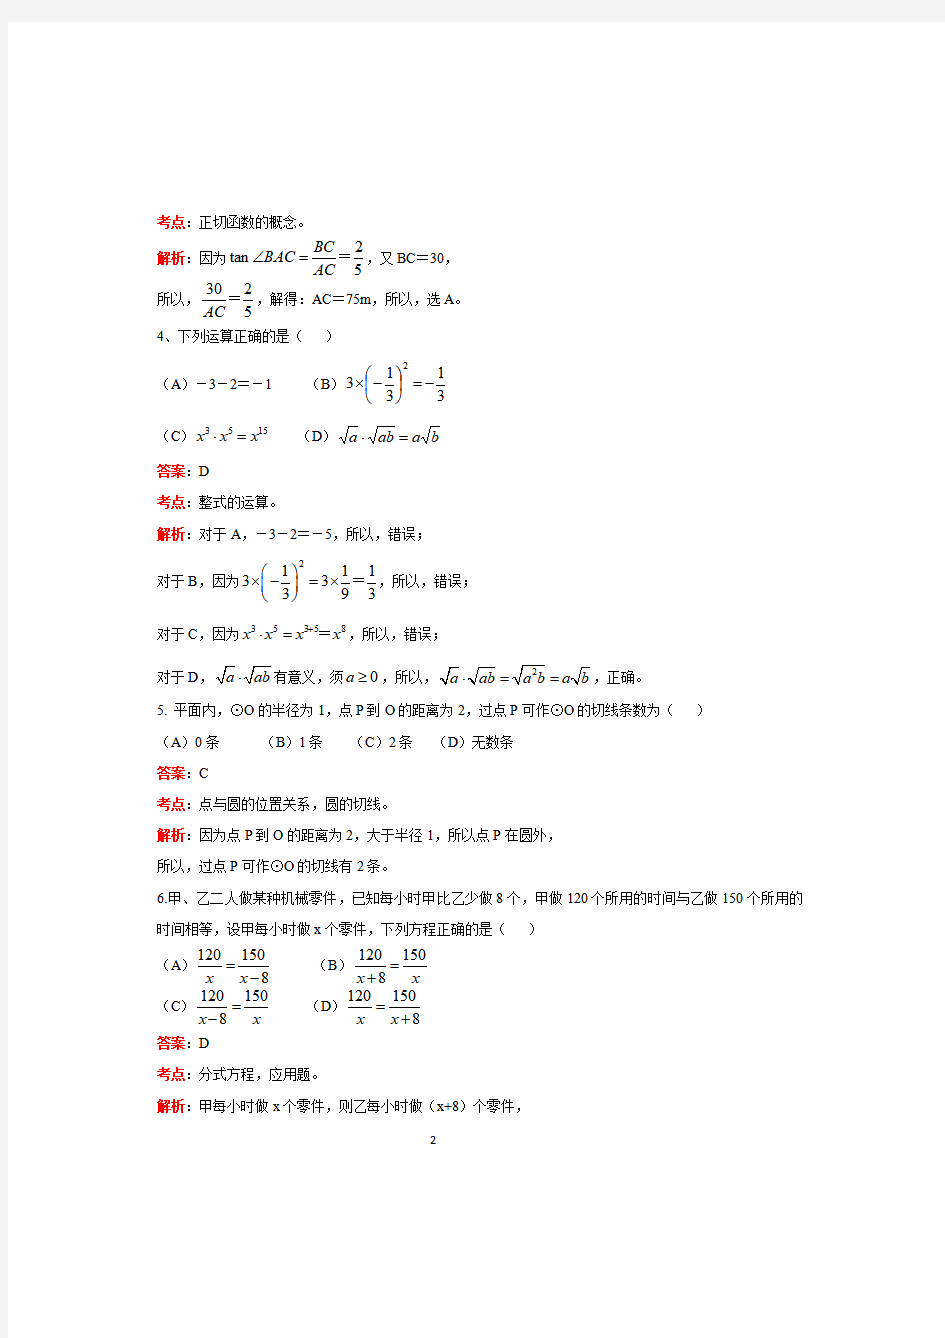 广州中考数学试题答案,2019年广州中考数学真题及答案